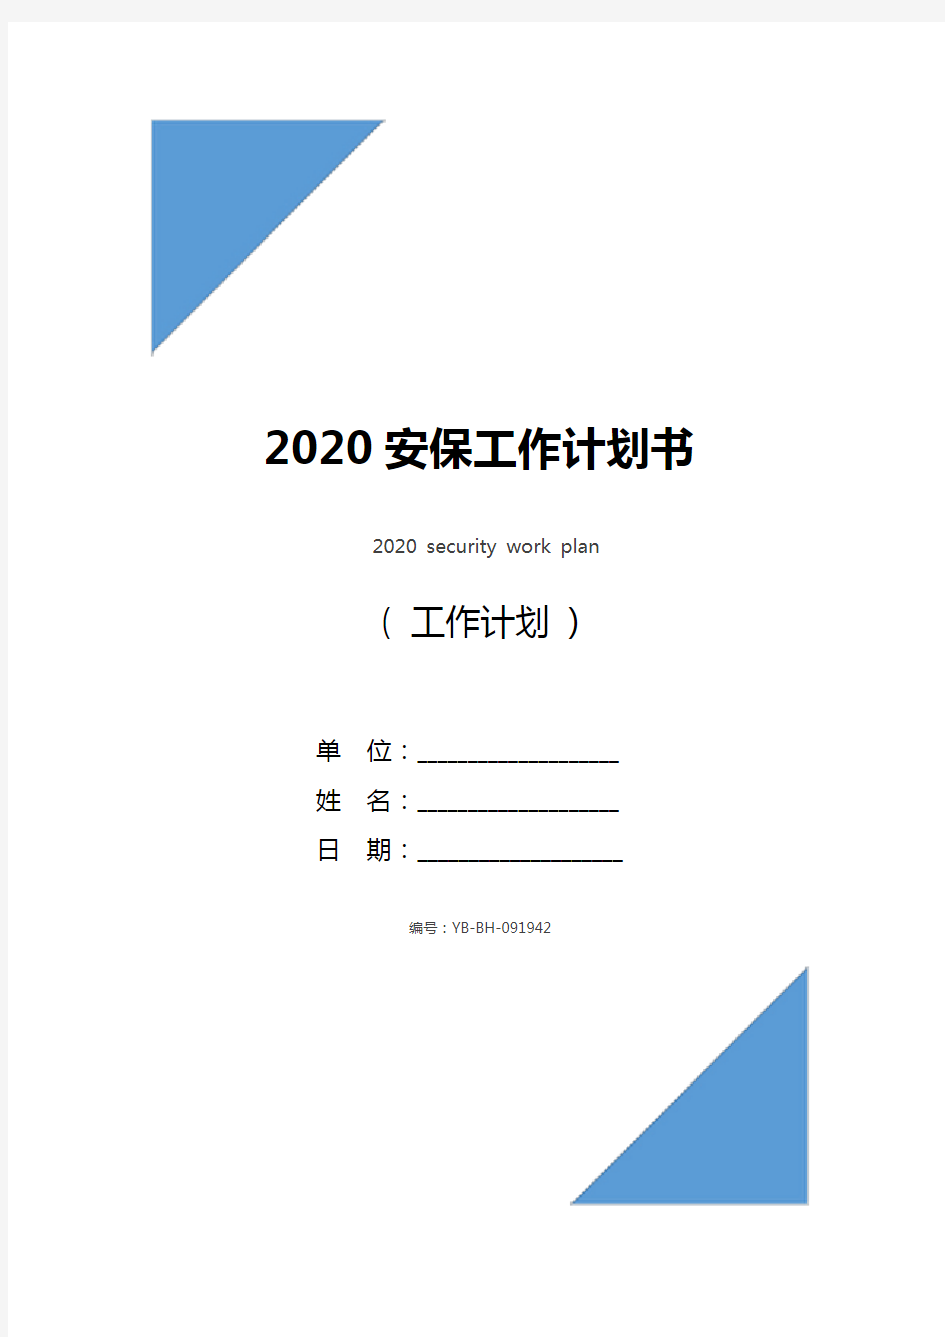 2020安保工作计划书